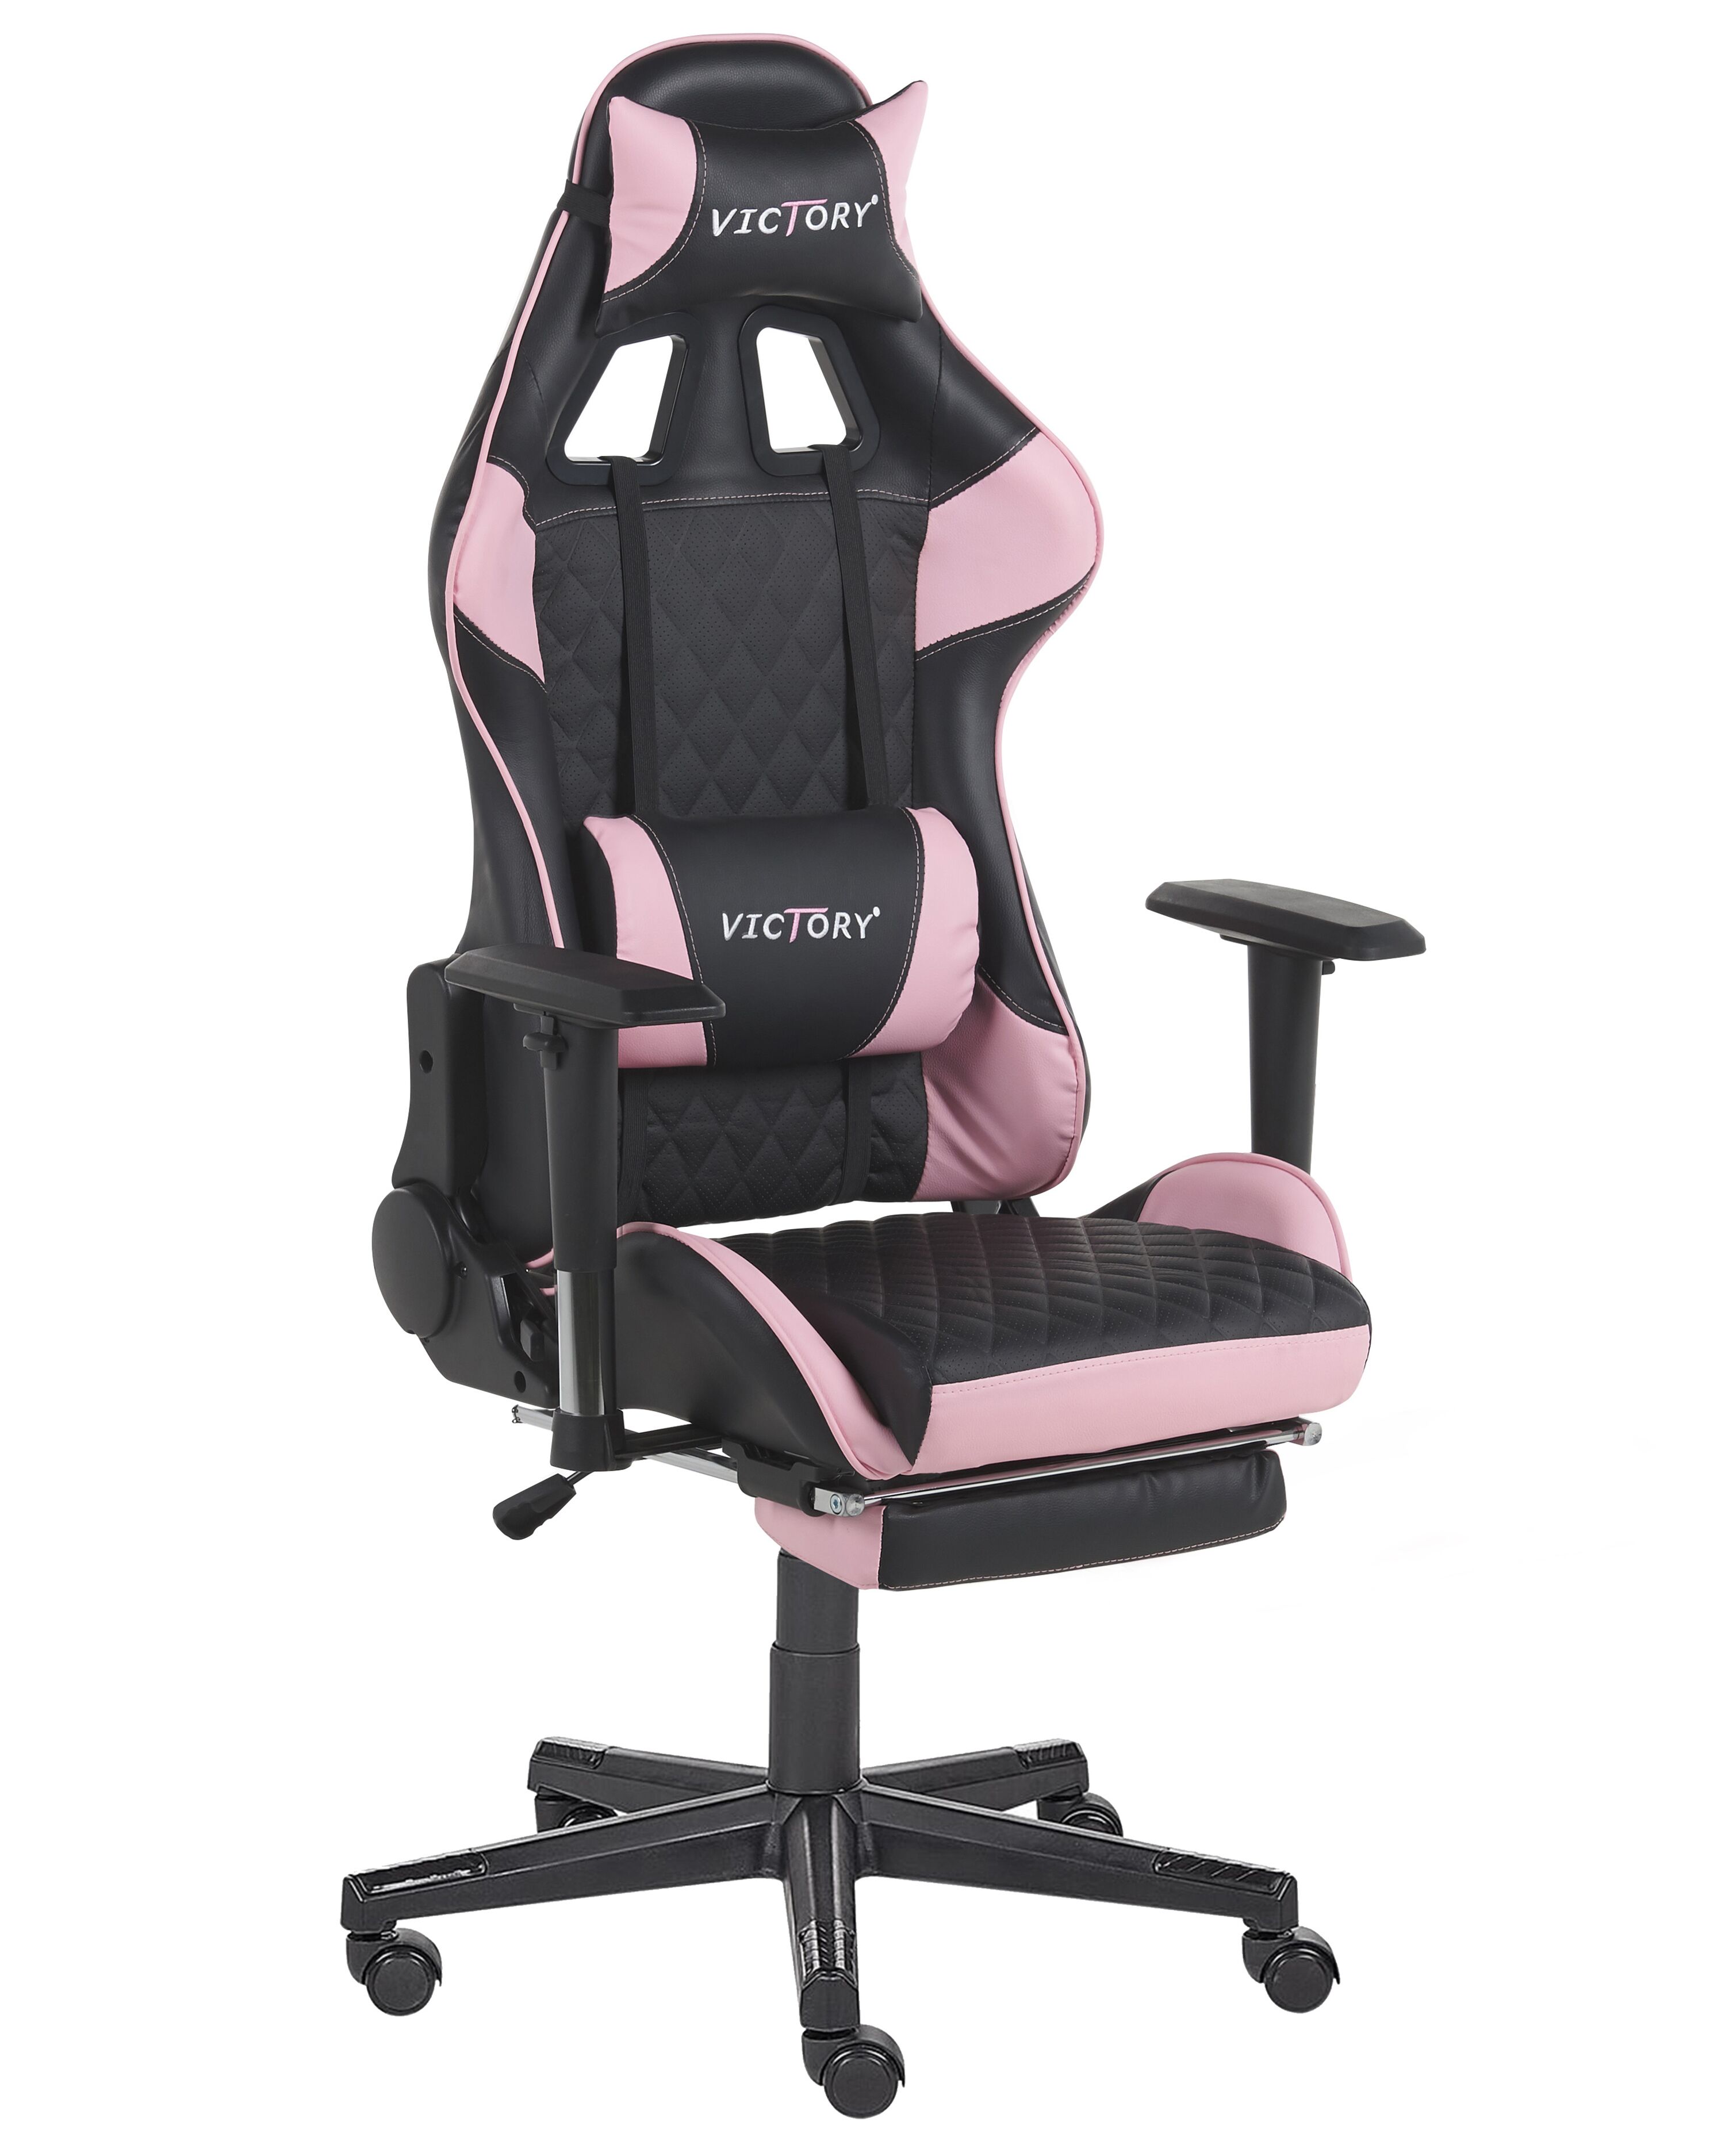 Chaise gamer rose et noire avec repose-pieds amovible